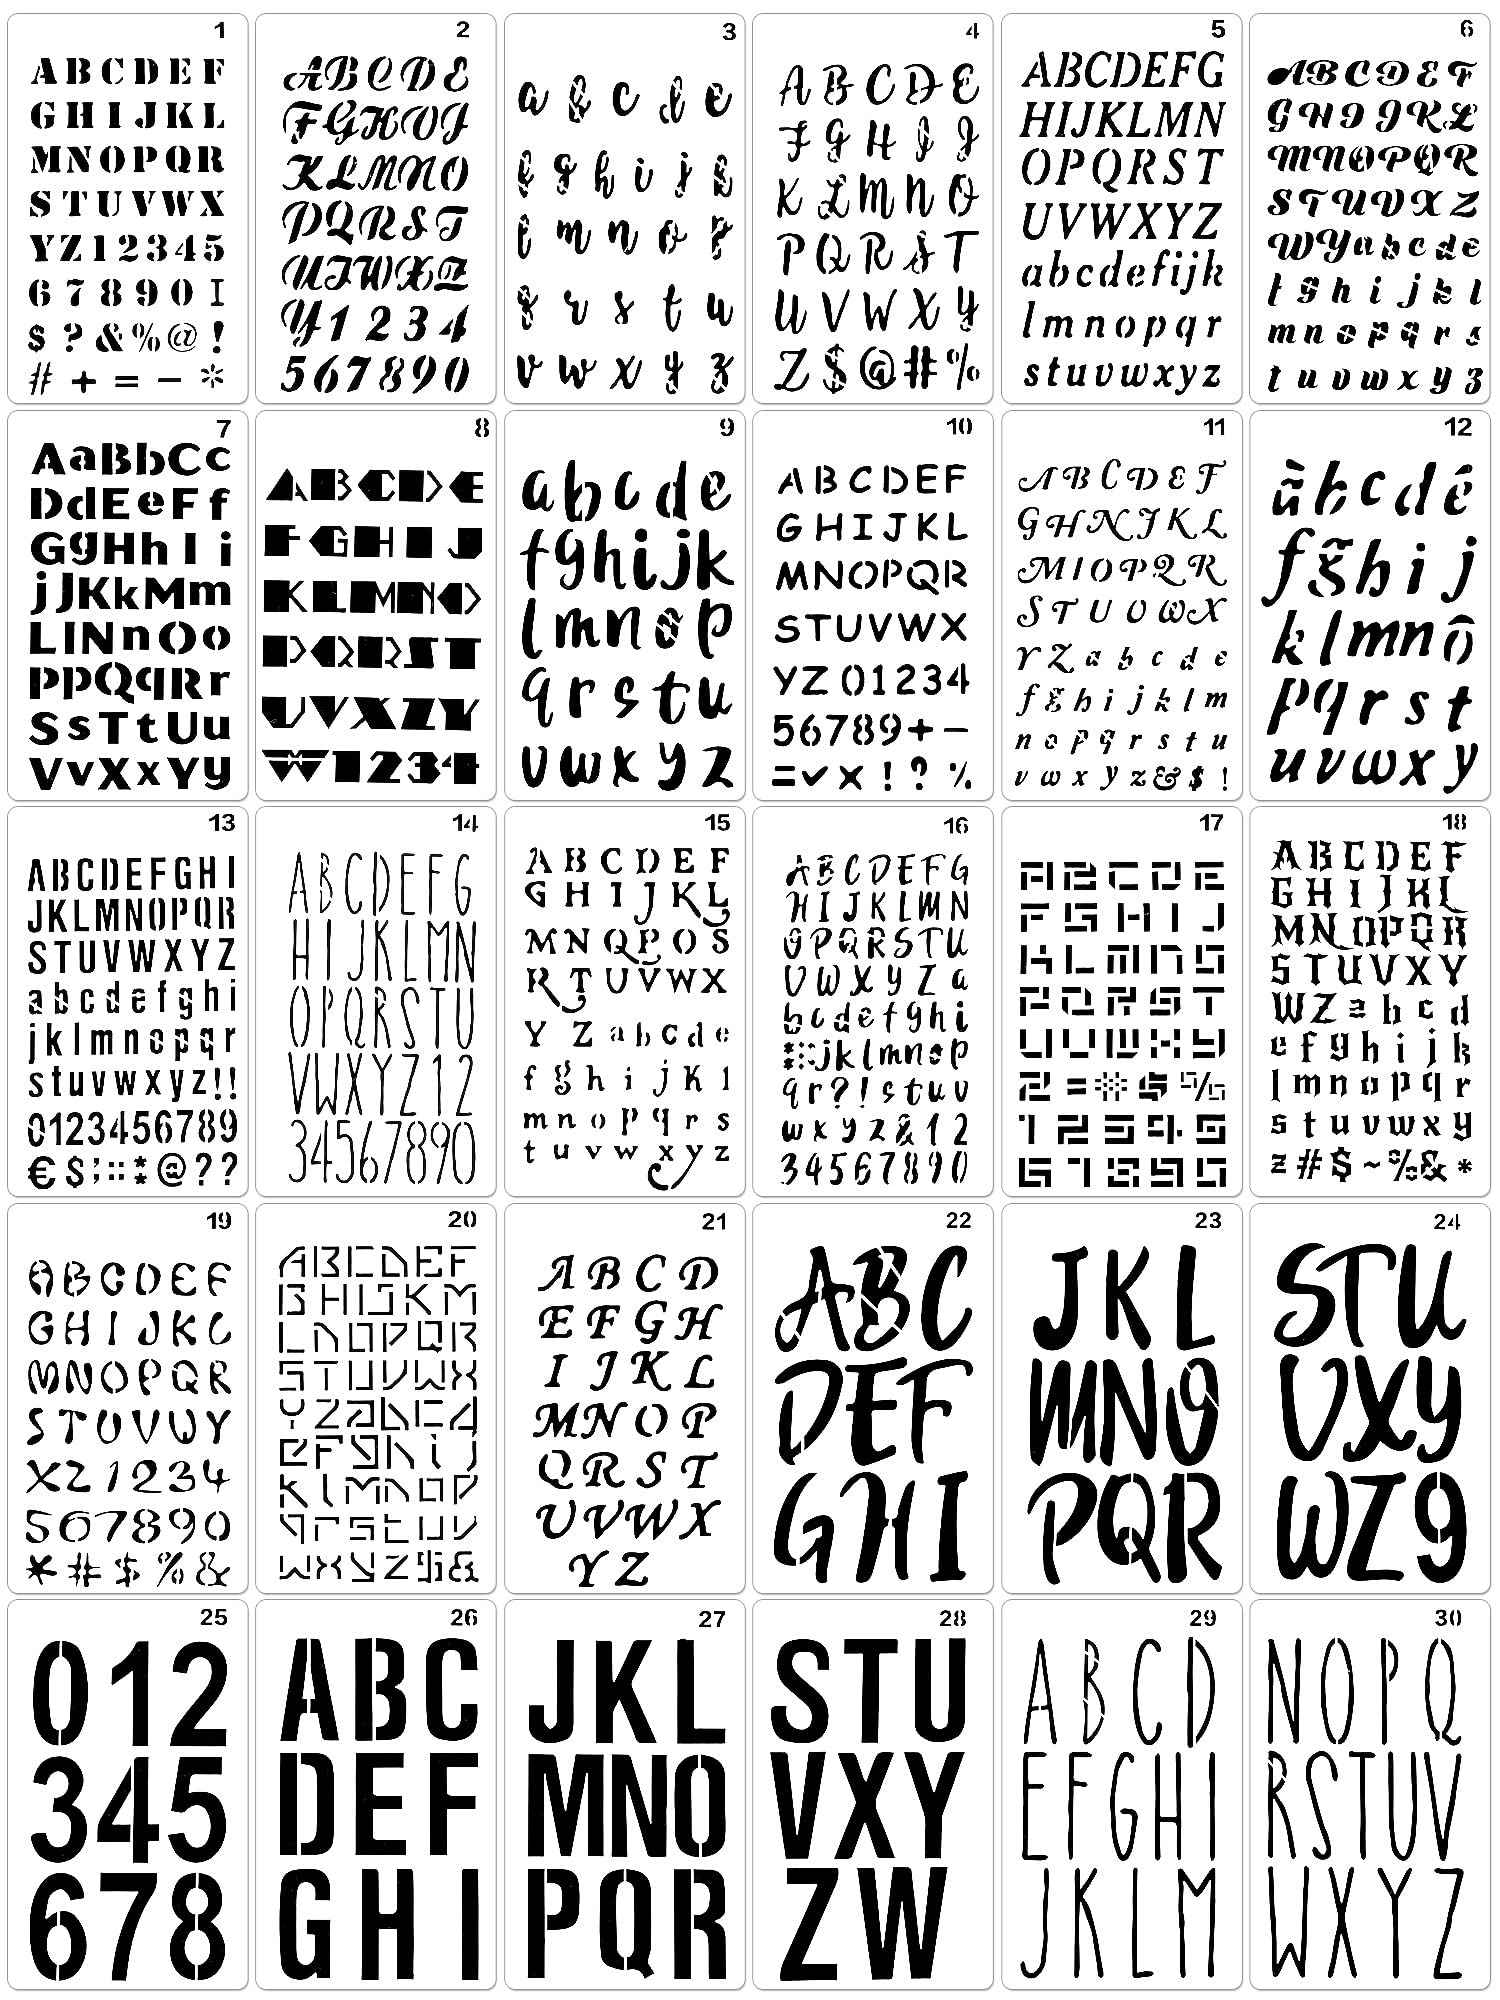 30 Pieces Letter Stencils for Painting 4 x 7 Inch Alphabet Journal Stencils  Reusable Plastic Letter